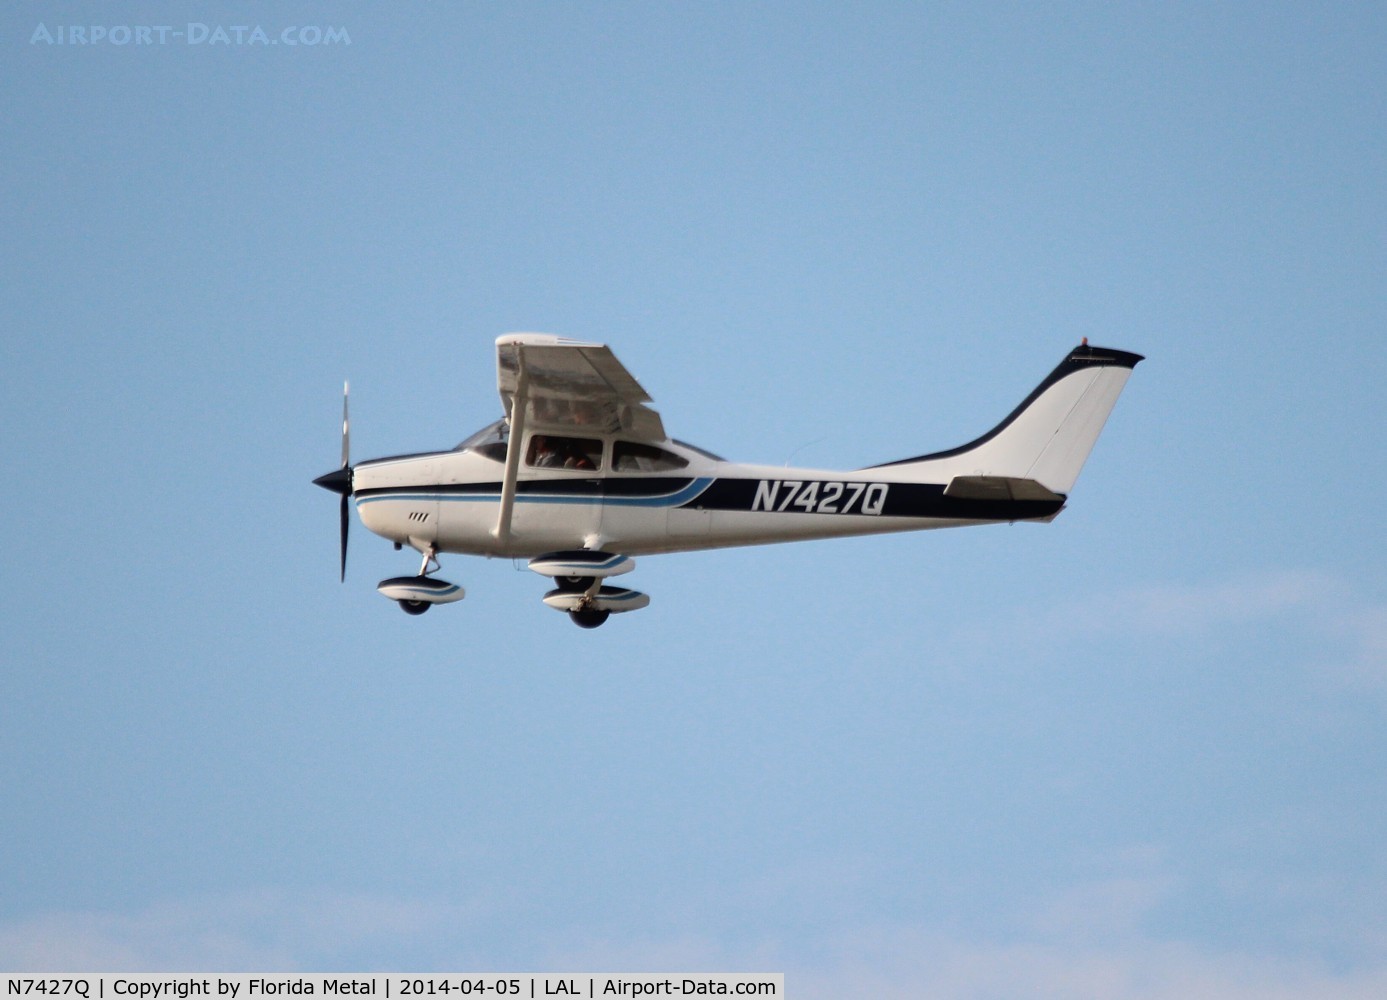 N7427Q, 1972 Cessna 182P Skylane C/N 18261067, Cessna 182P